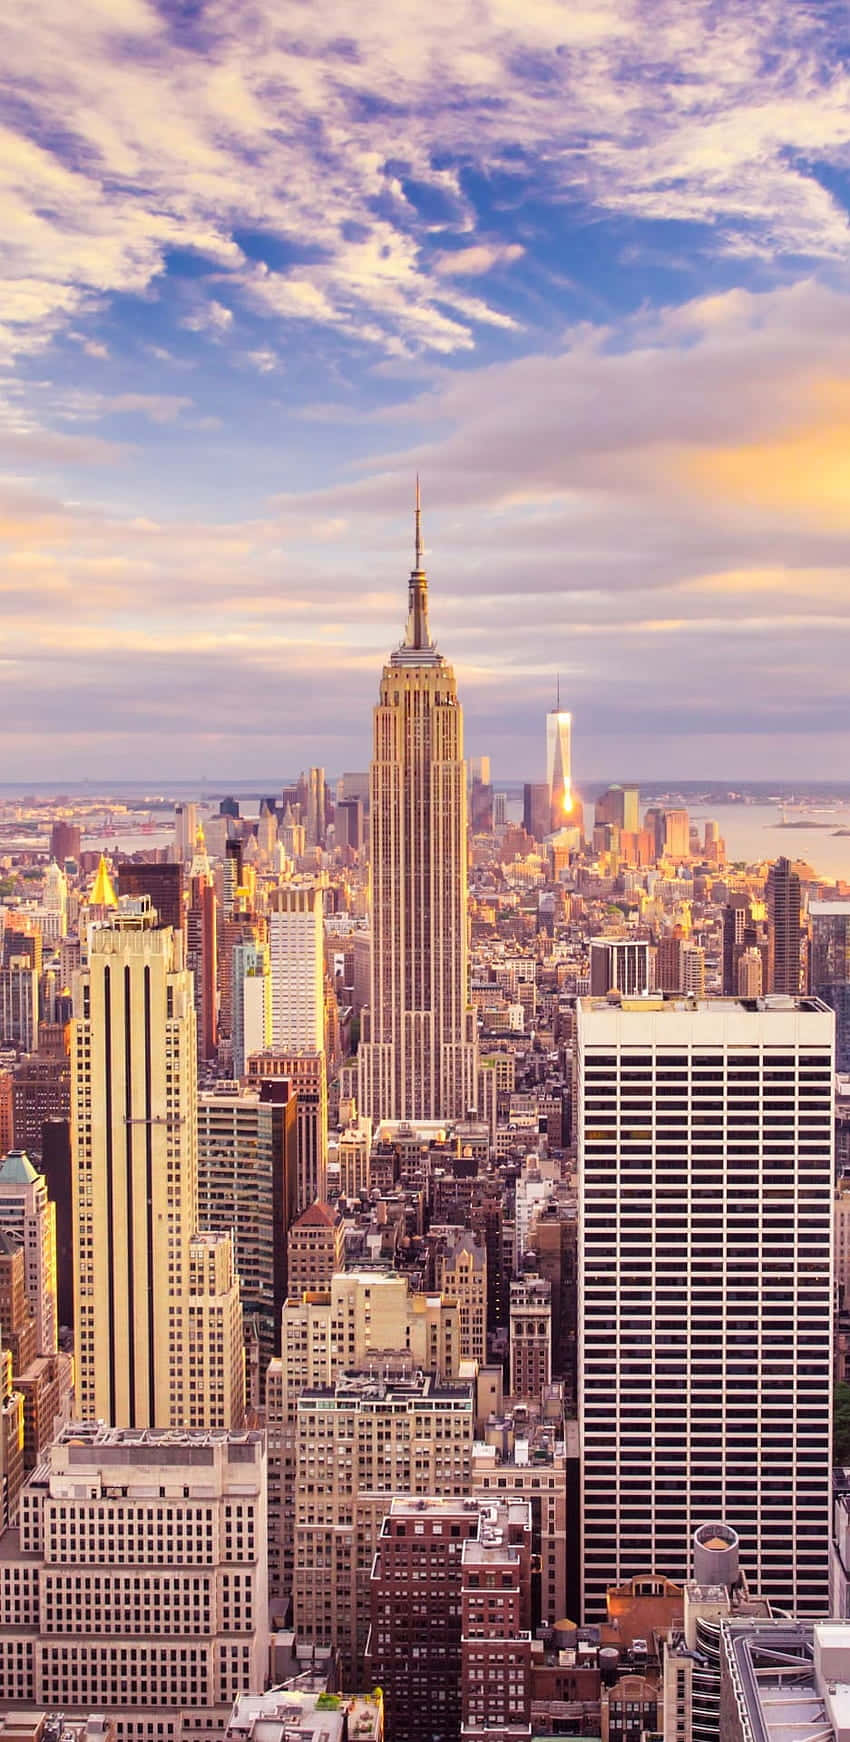 Melhorplano De Fundo De Nova York Com O Empire State Building E Arranha-céus.